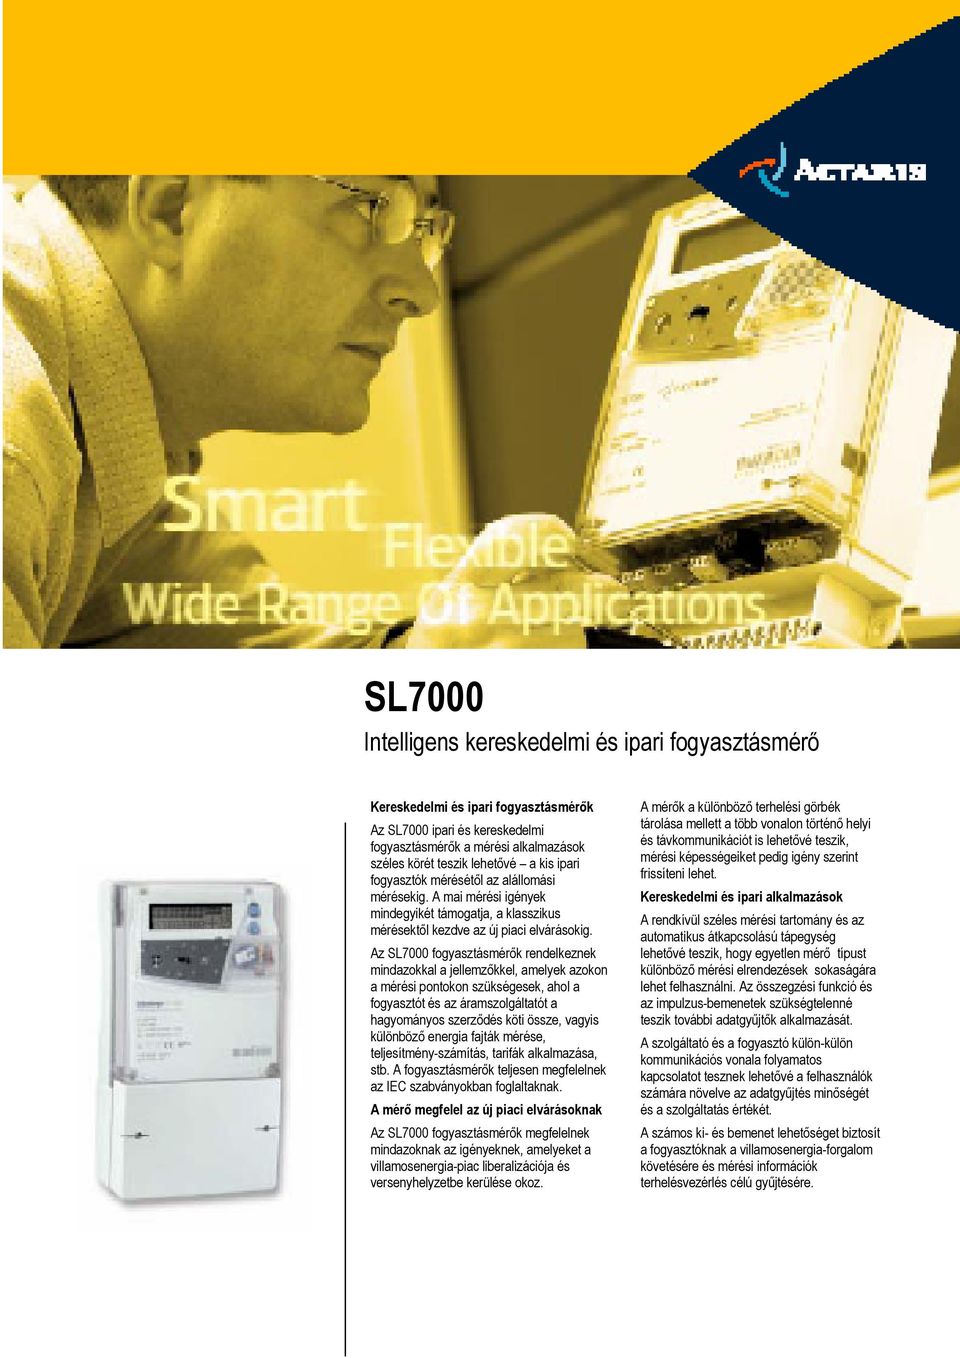 Az SL7000 fogyasztásmérők rendelkeznek mindazokkal a jellemzőkkel, amelyek azokon a mérési pontokon szükségesek, ahol a fogyasztót és az áramszolgáltatót a hagyományos szerződés köti össze, vagyis